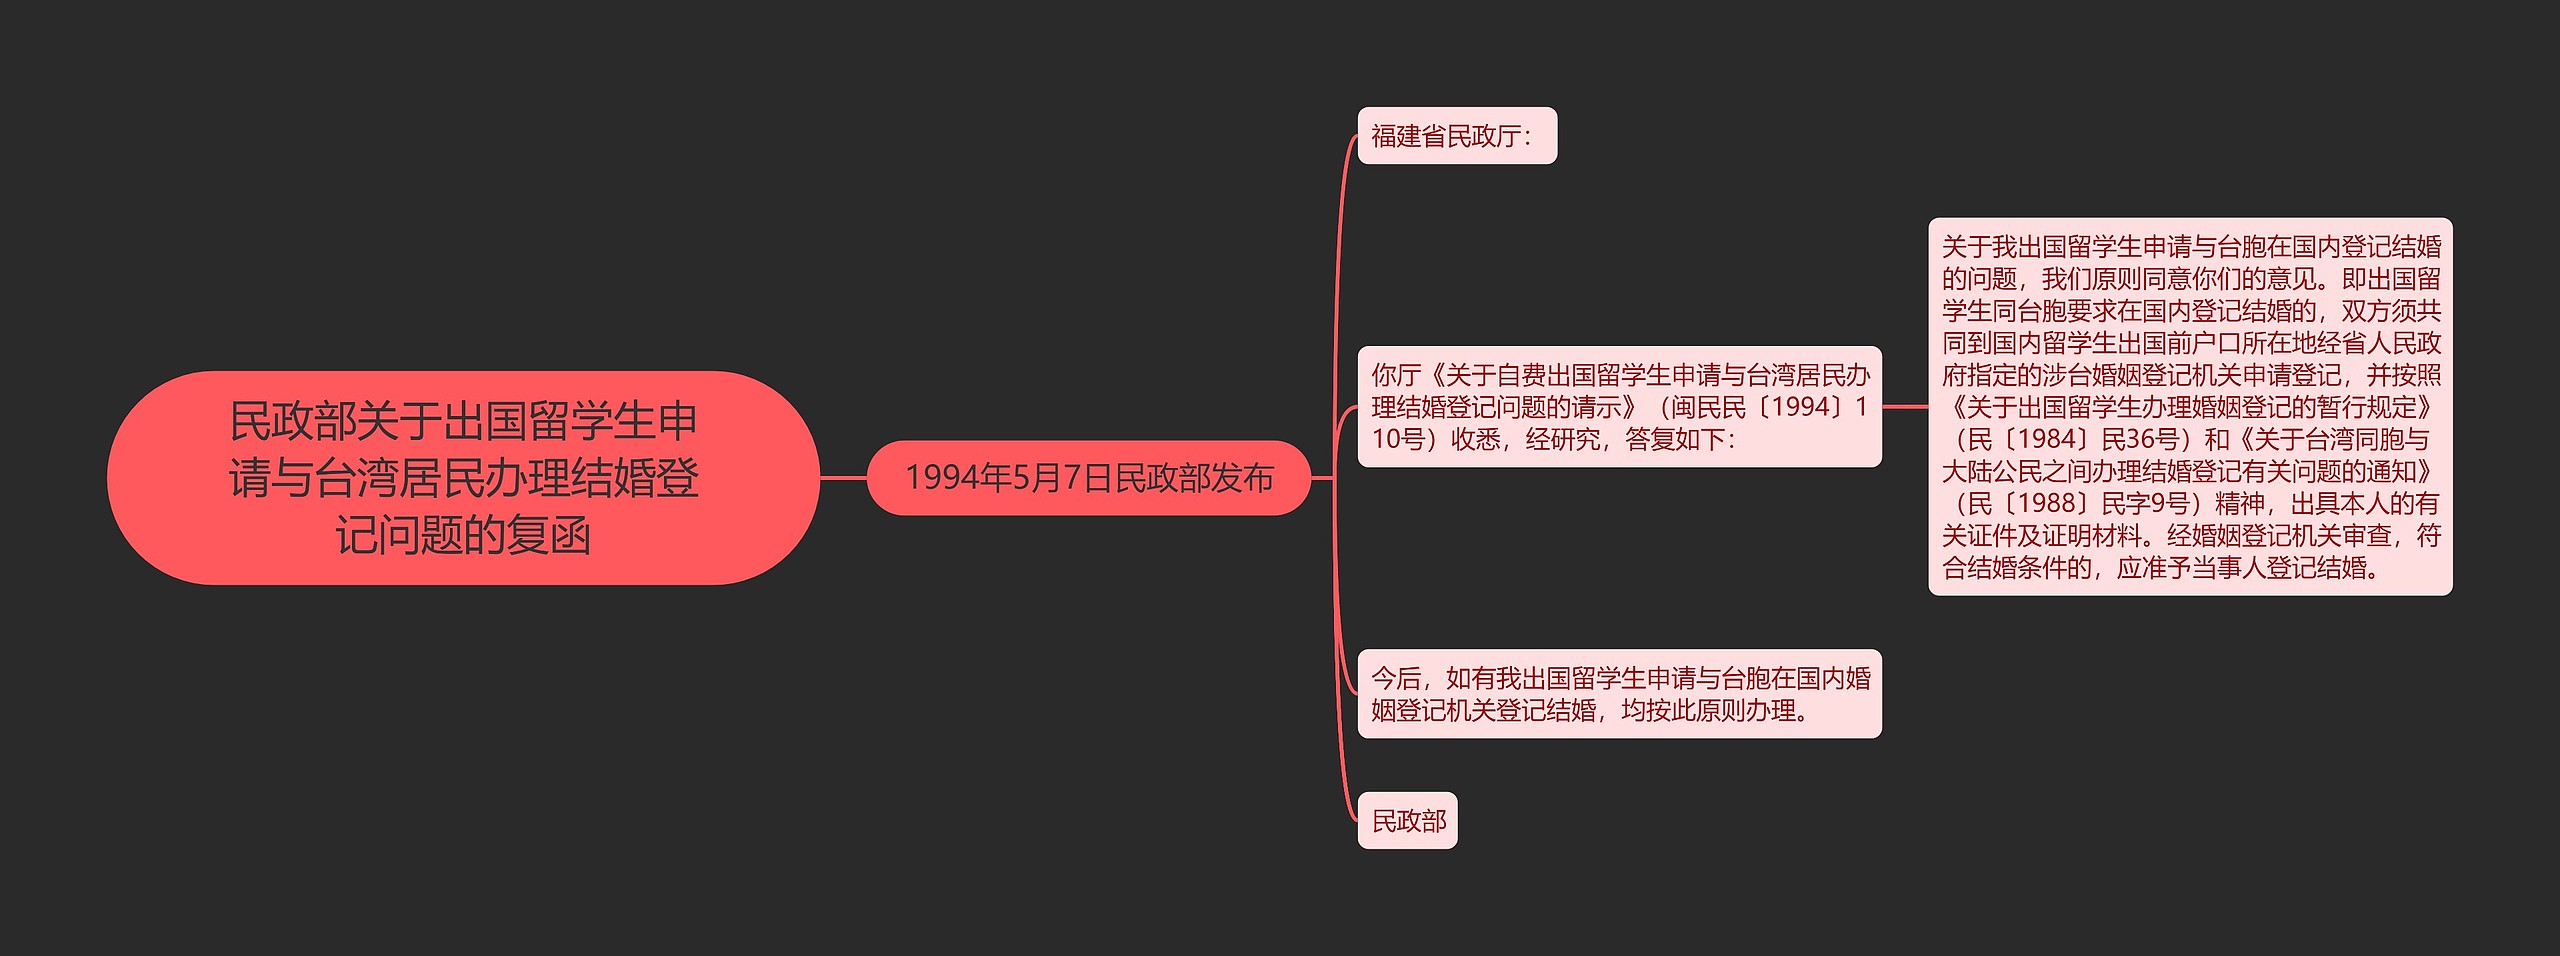 民政部关于出国留学生申请与台湾居民办理结婚登记问题的复函思维导图